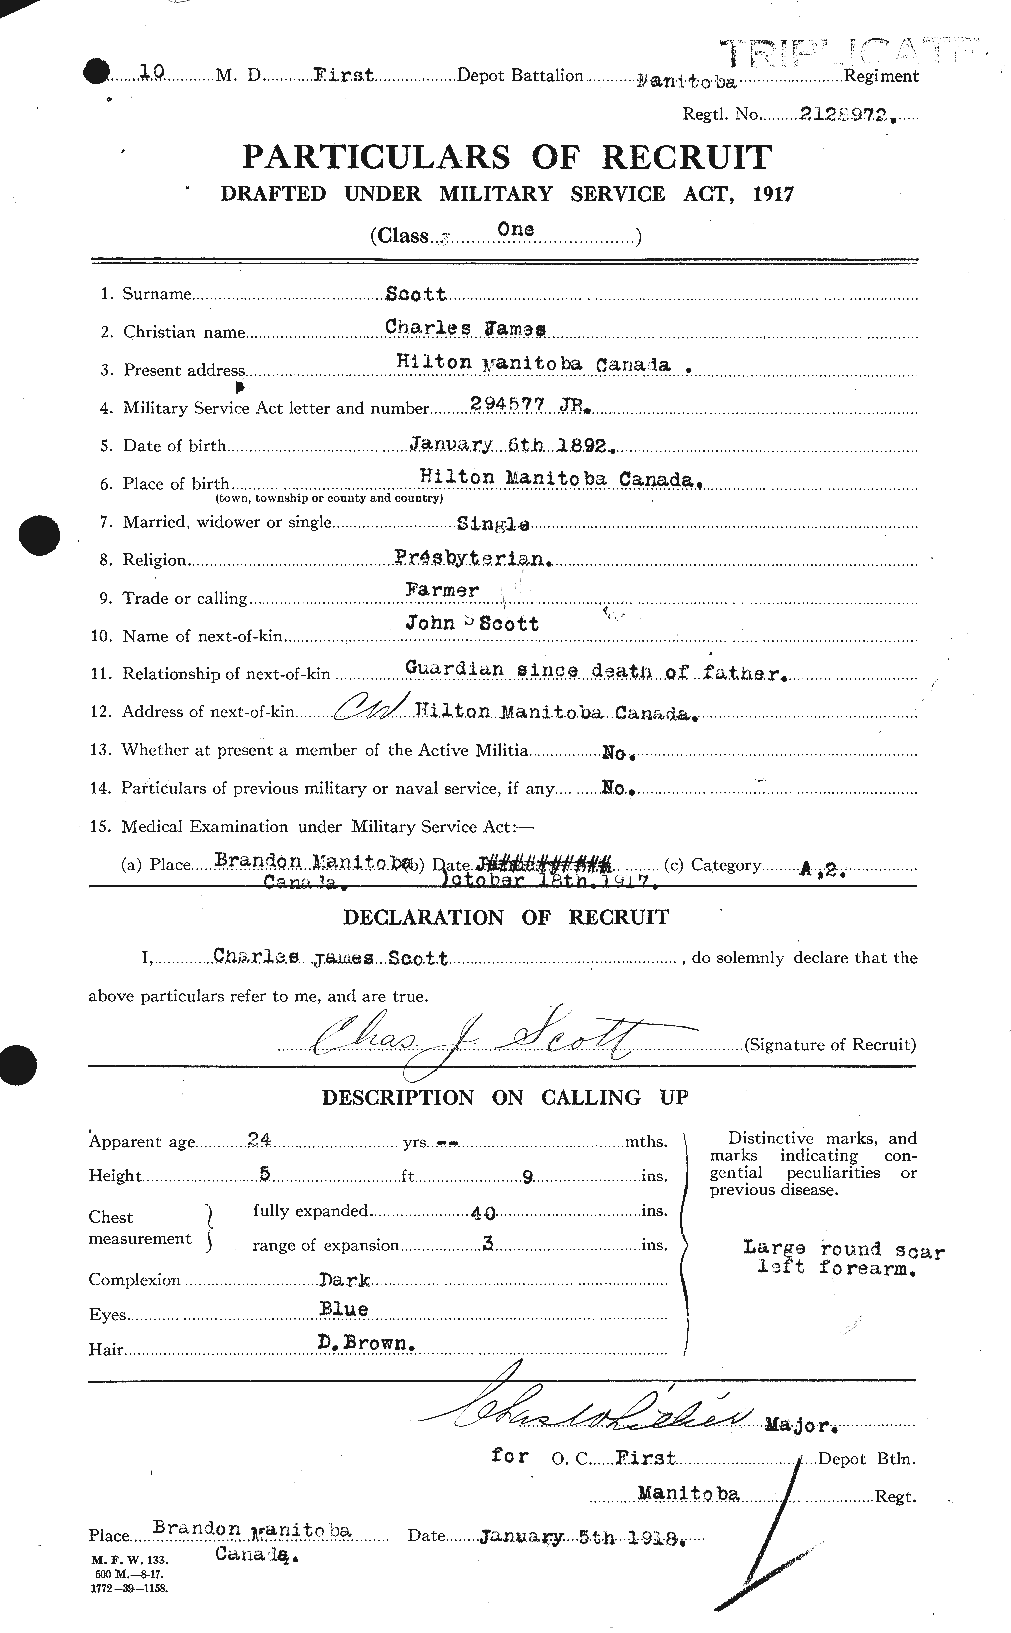 Dossiers du Personnel de la Première Guerre mondiale - CEC 085890a